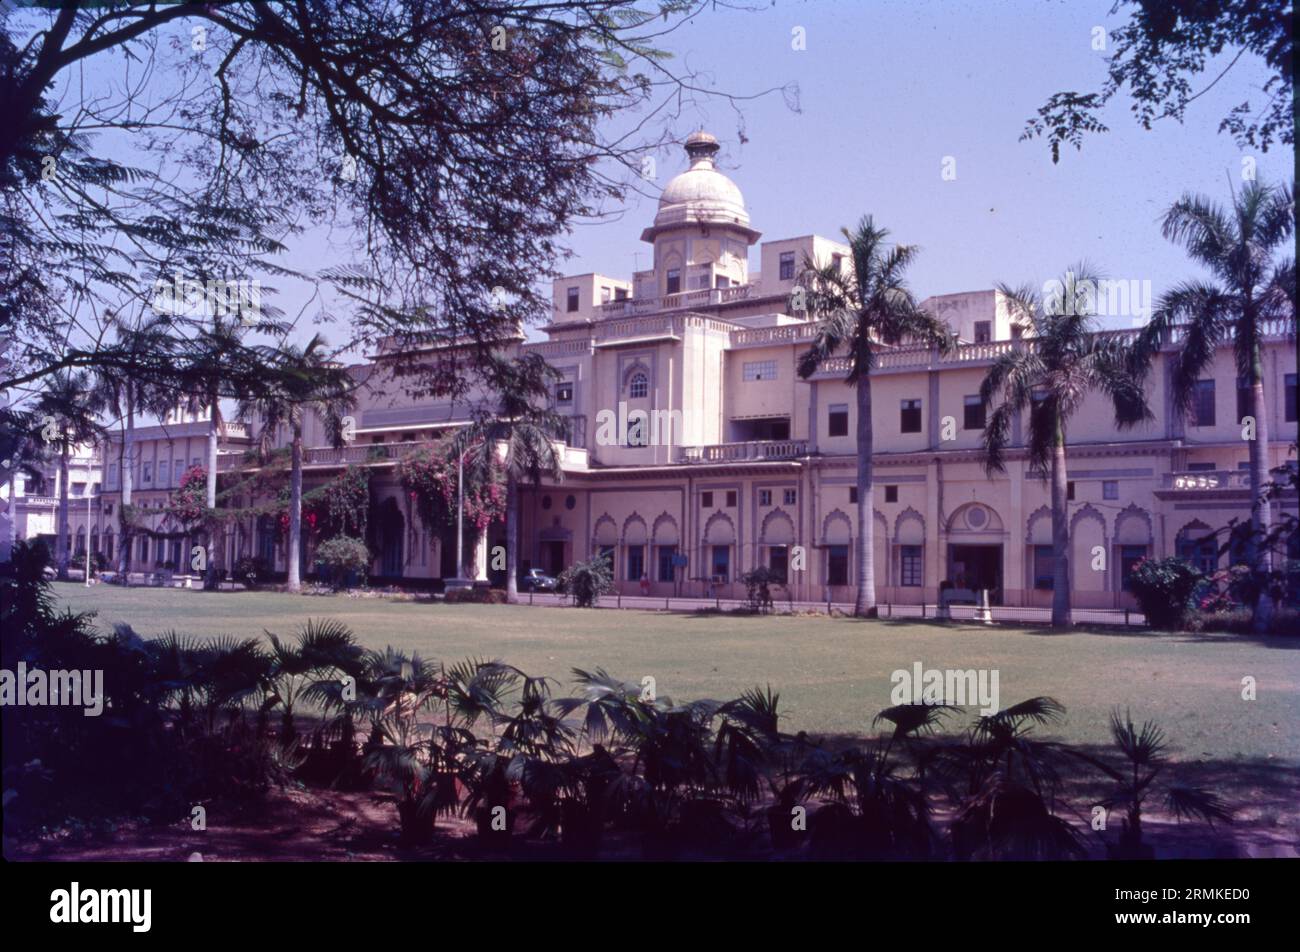 Il Chattar Manzil, o Palazzo Umbrella, è un edificio a Lucknow nell'Uttar Pradesh che serviva come palazzo per i governanti di Awadh e le loro mogli. Più tardi, durante la ribellione indiana del 1857, l'edificio divenne una roccaforte dei rivoluzionari indiani. Foto Stock